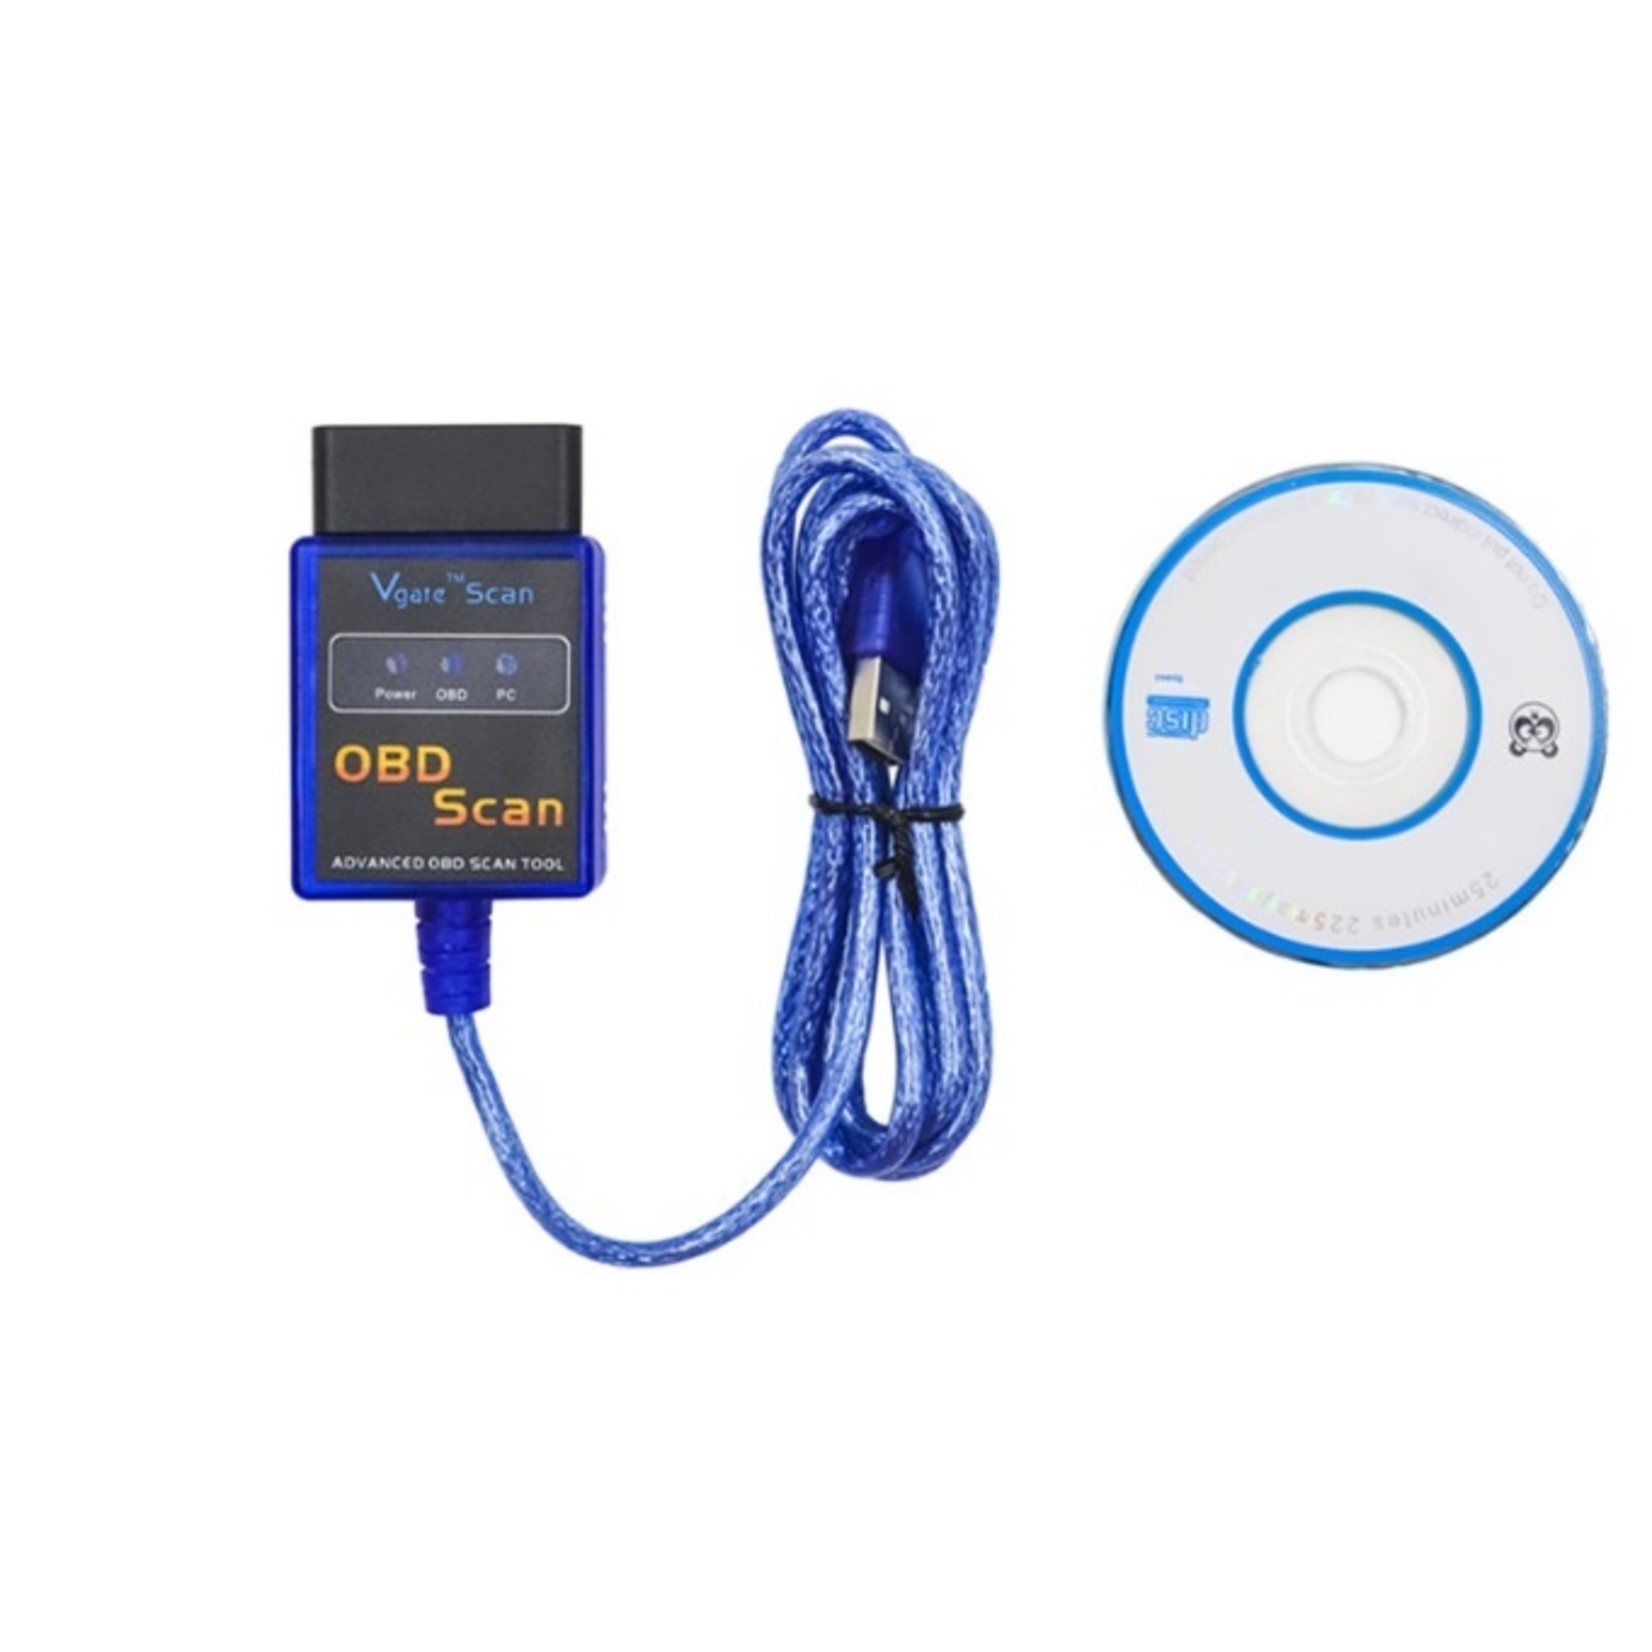 Vgate OBD2 USB scanner / ELM327 Interface